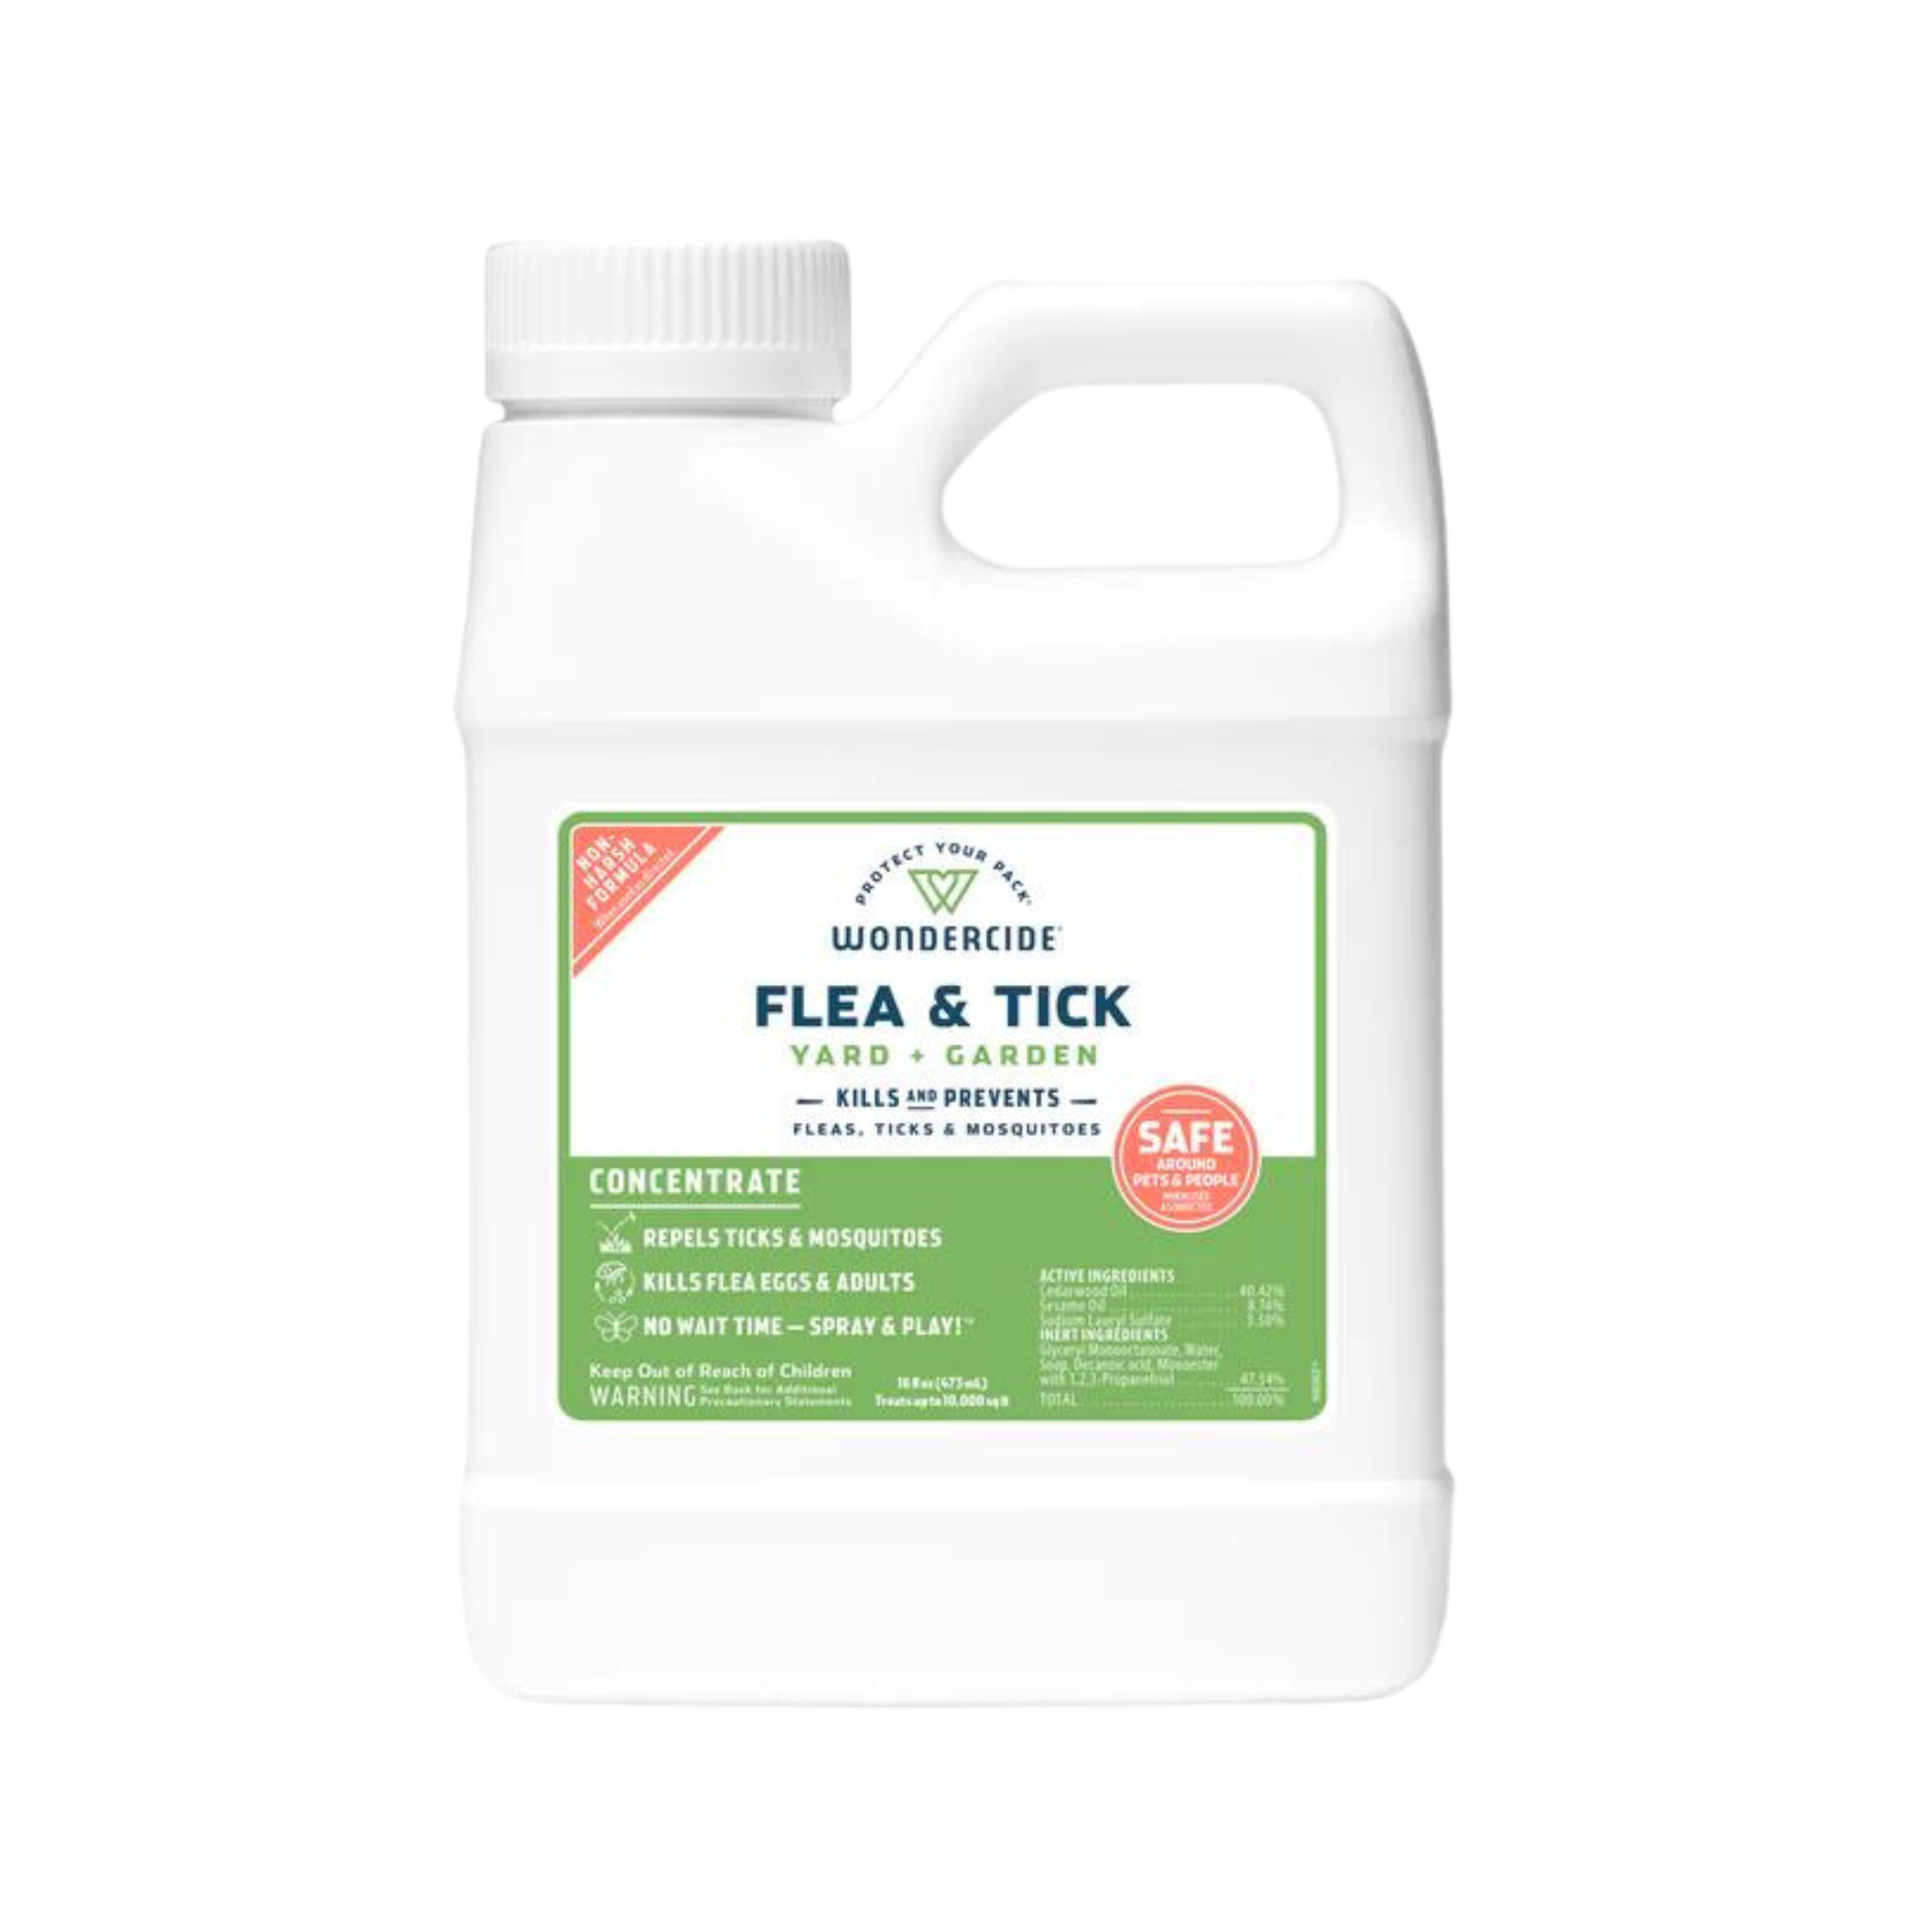 Wondercide Flea & Tick Yard & Garden Concentrate Spray